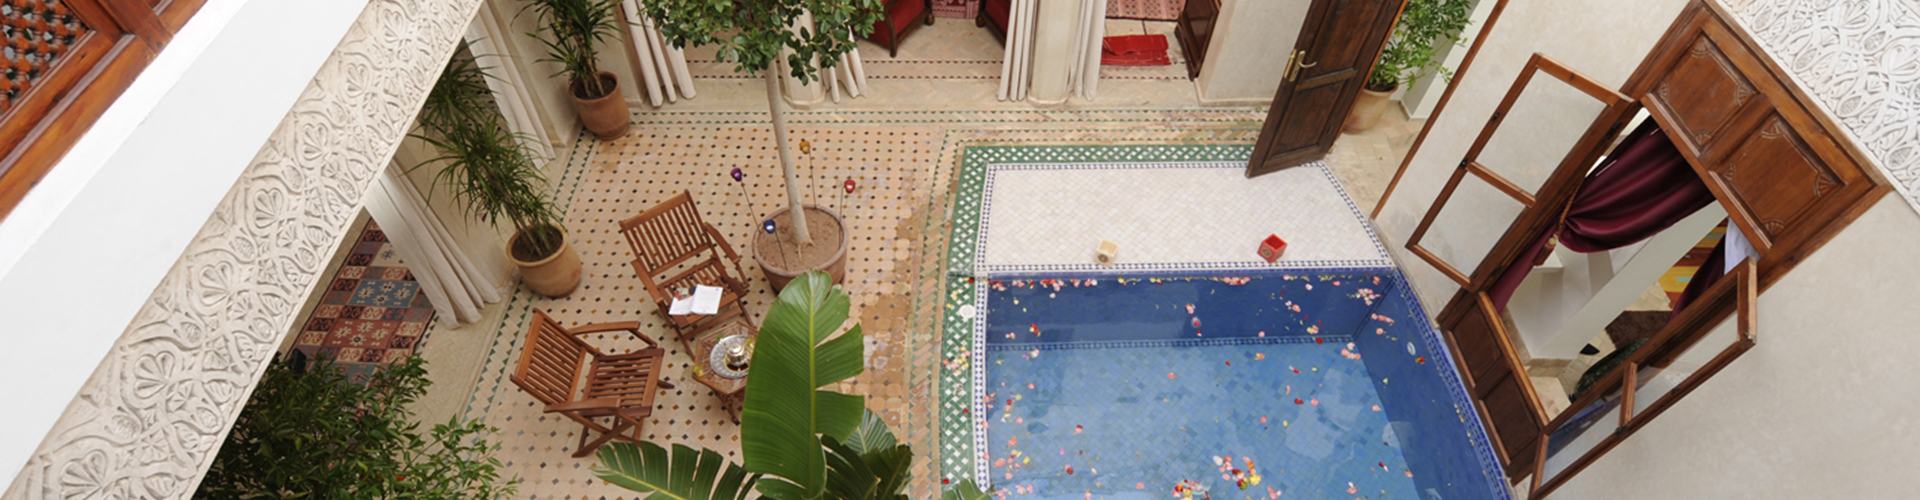 Patio con piscina del Riad de la Belle Époque, Marrakech.